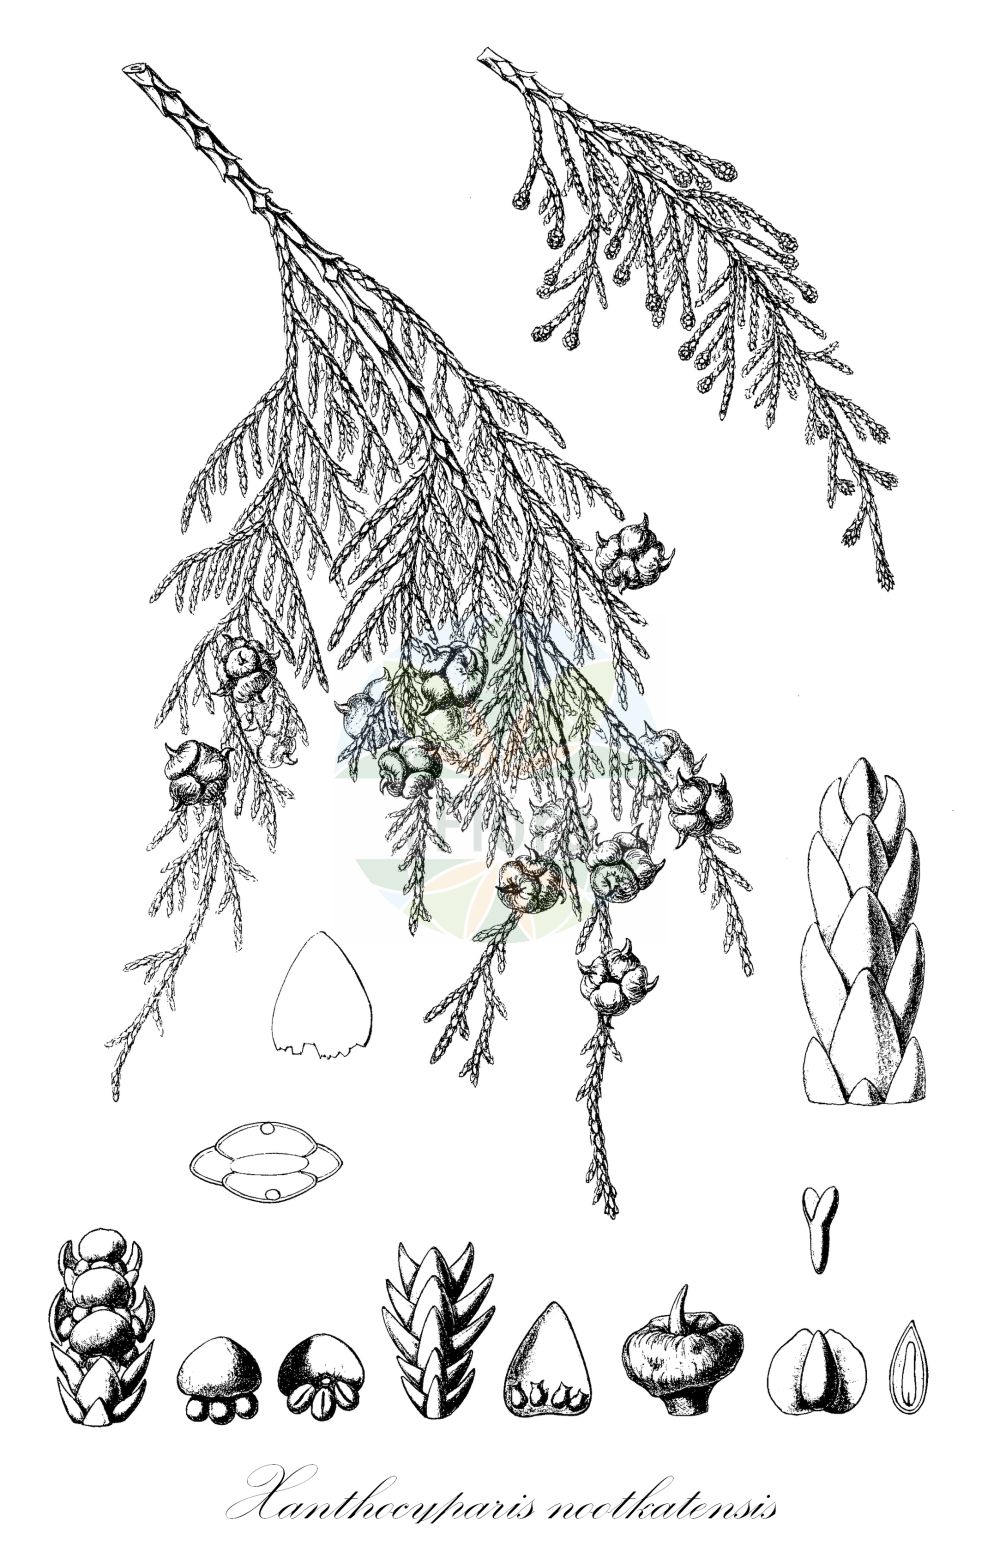 Historische Abbildung von Xanthocyparis nootkatensis (Nootka-Scheinzypresse - Nootka Cypress). Das Bild zeigt Blatt, Bluete, Frucht und Same. ---- Historical Drawing of Xanthocyparis nootkatensis (Nootka-Scheinzypresse - Nootka Cypress). The image is showing leaf, flower, fruit and seed.(Xanthocyparis nootkatensis,Nootka-Scheinzypresse,Nootka Cypress,Chamaecyparis nootkatensis,Cupressus nootkatensis,Xanthocyparis nootkatensis,Nootka-Scheinzypresse,Nootka Cypress,Alaska Cypress,Alaska Yellow Cedar,Nootka False Cypress,Yellow Cypress,Xanthocyparis,Cupressaceae,Zypressengewächse,Cypress family,Blatt,Bluete,Frucht,Same,leaf,flower,fruit,seed,Sargent (1891-1902))